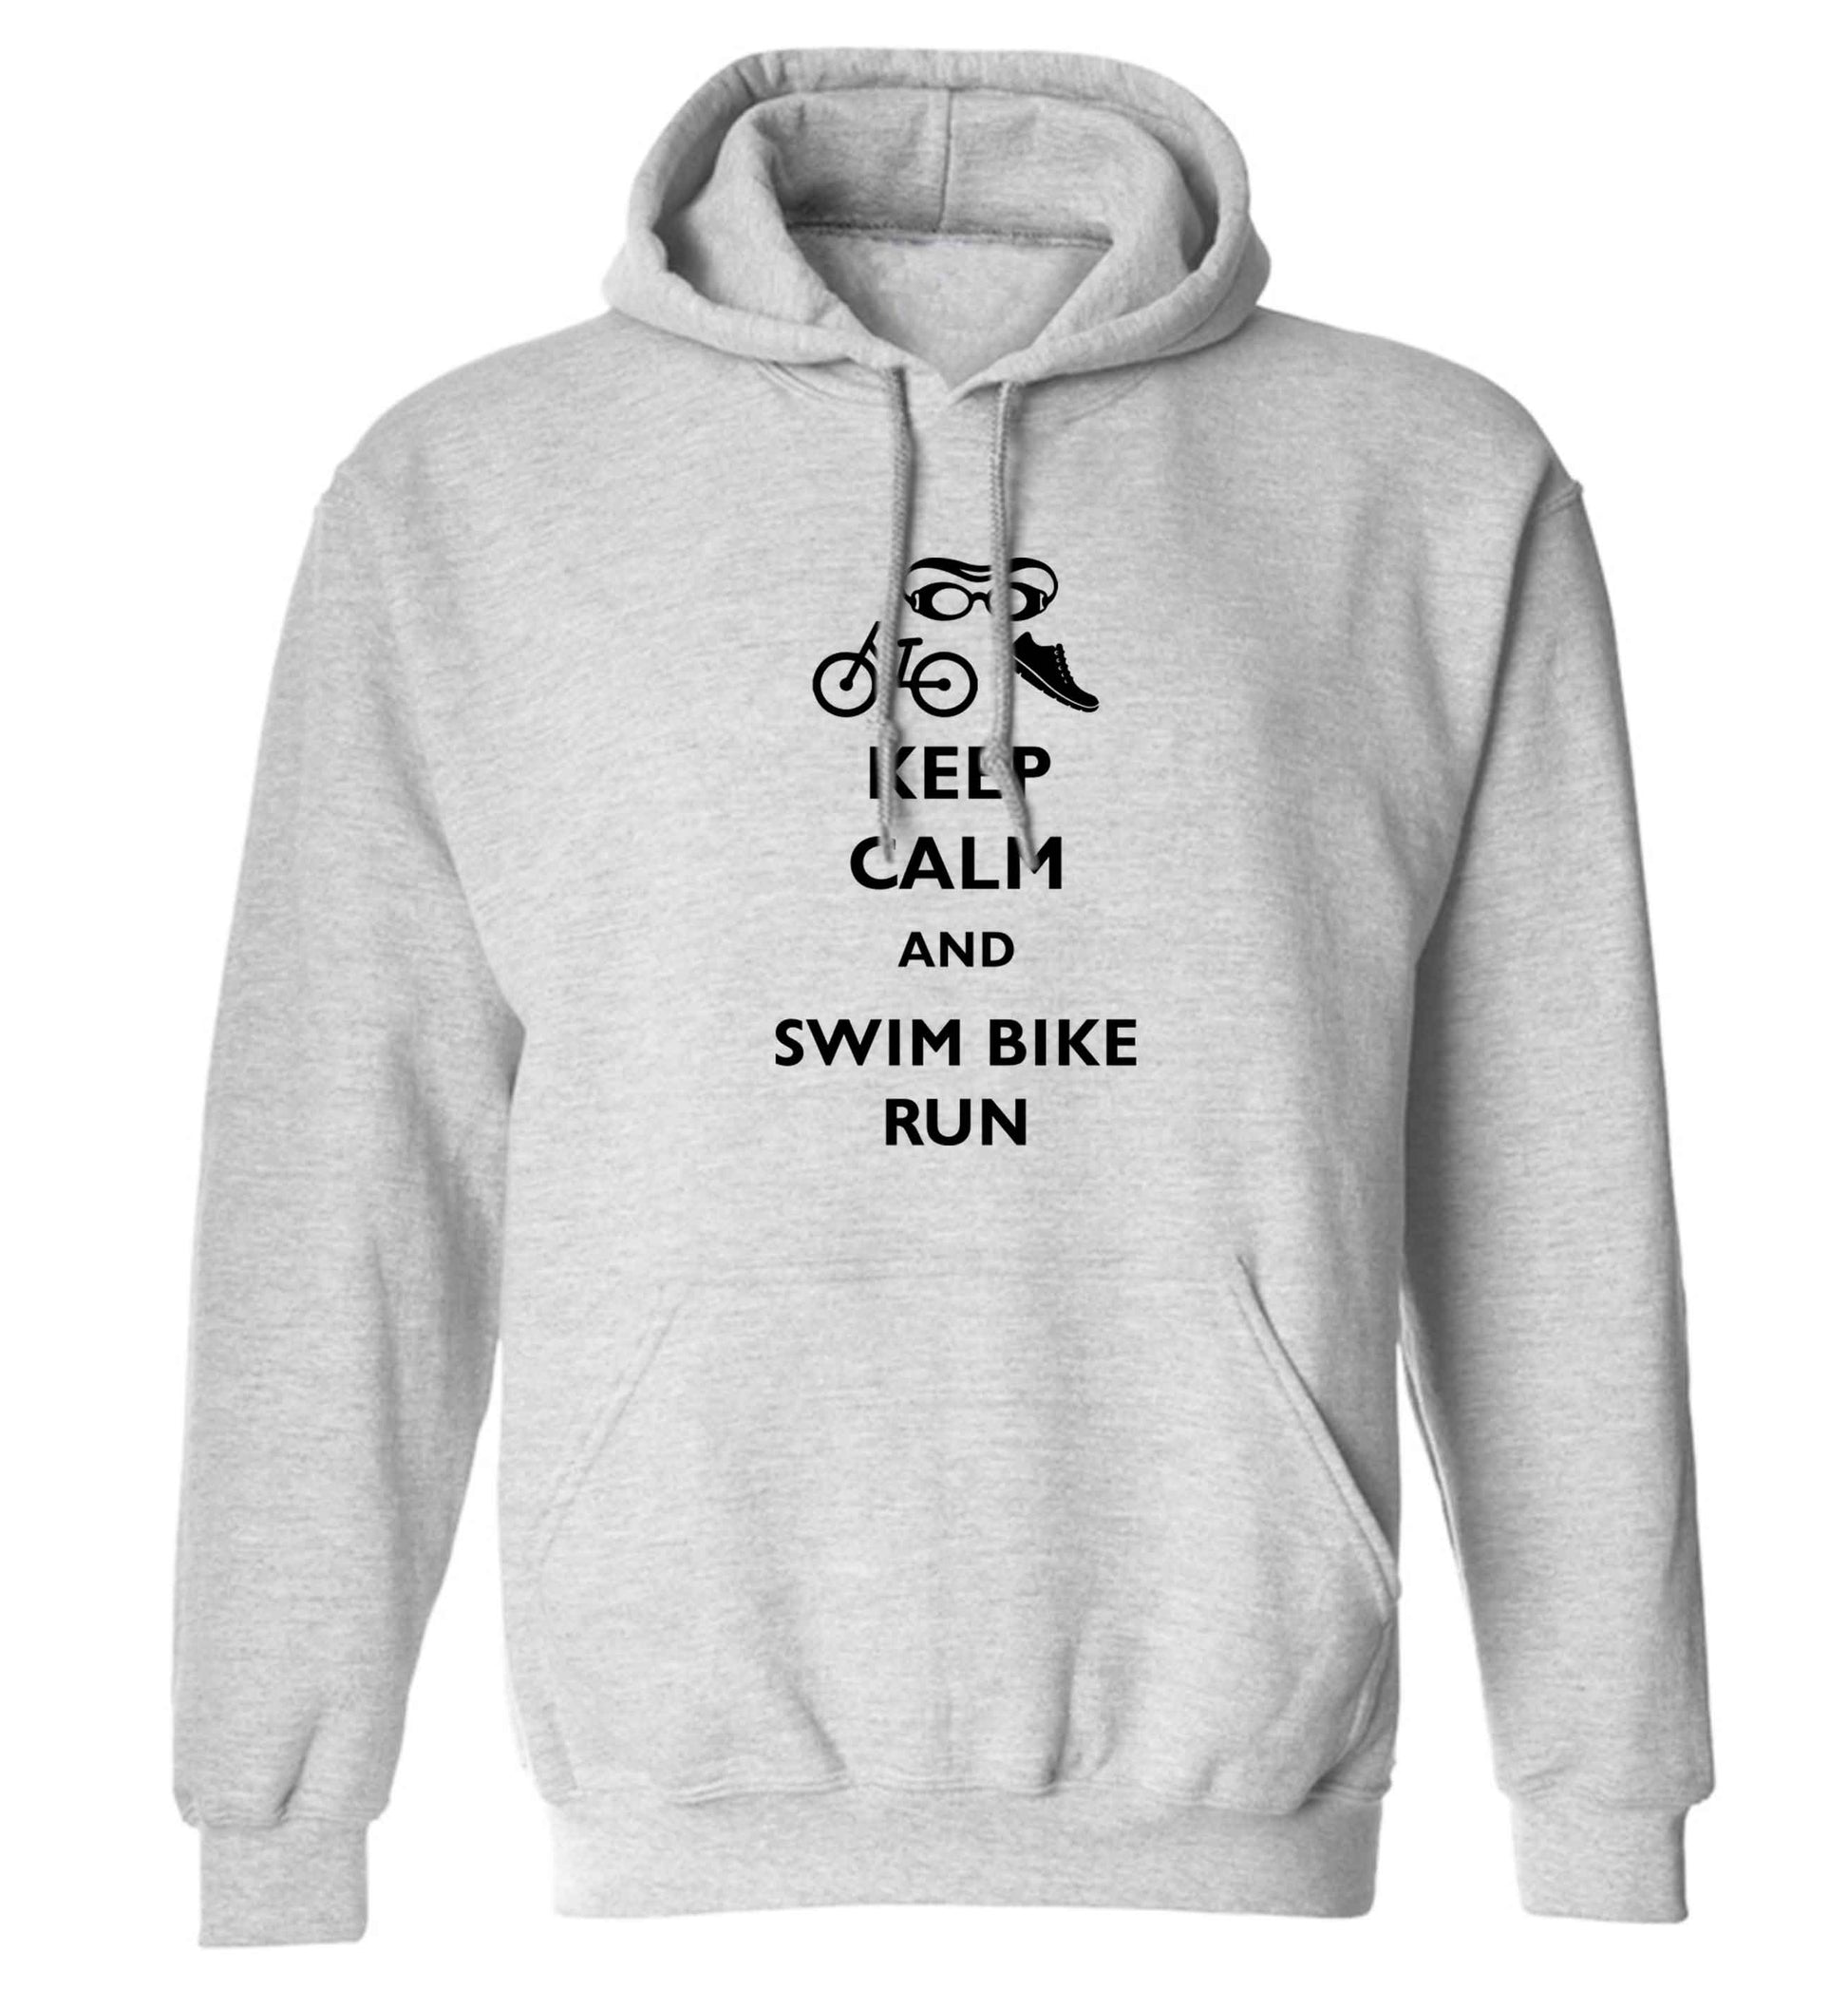 Keep calm and swim bike run adults unisex grey hoodie 2XL